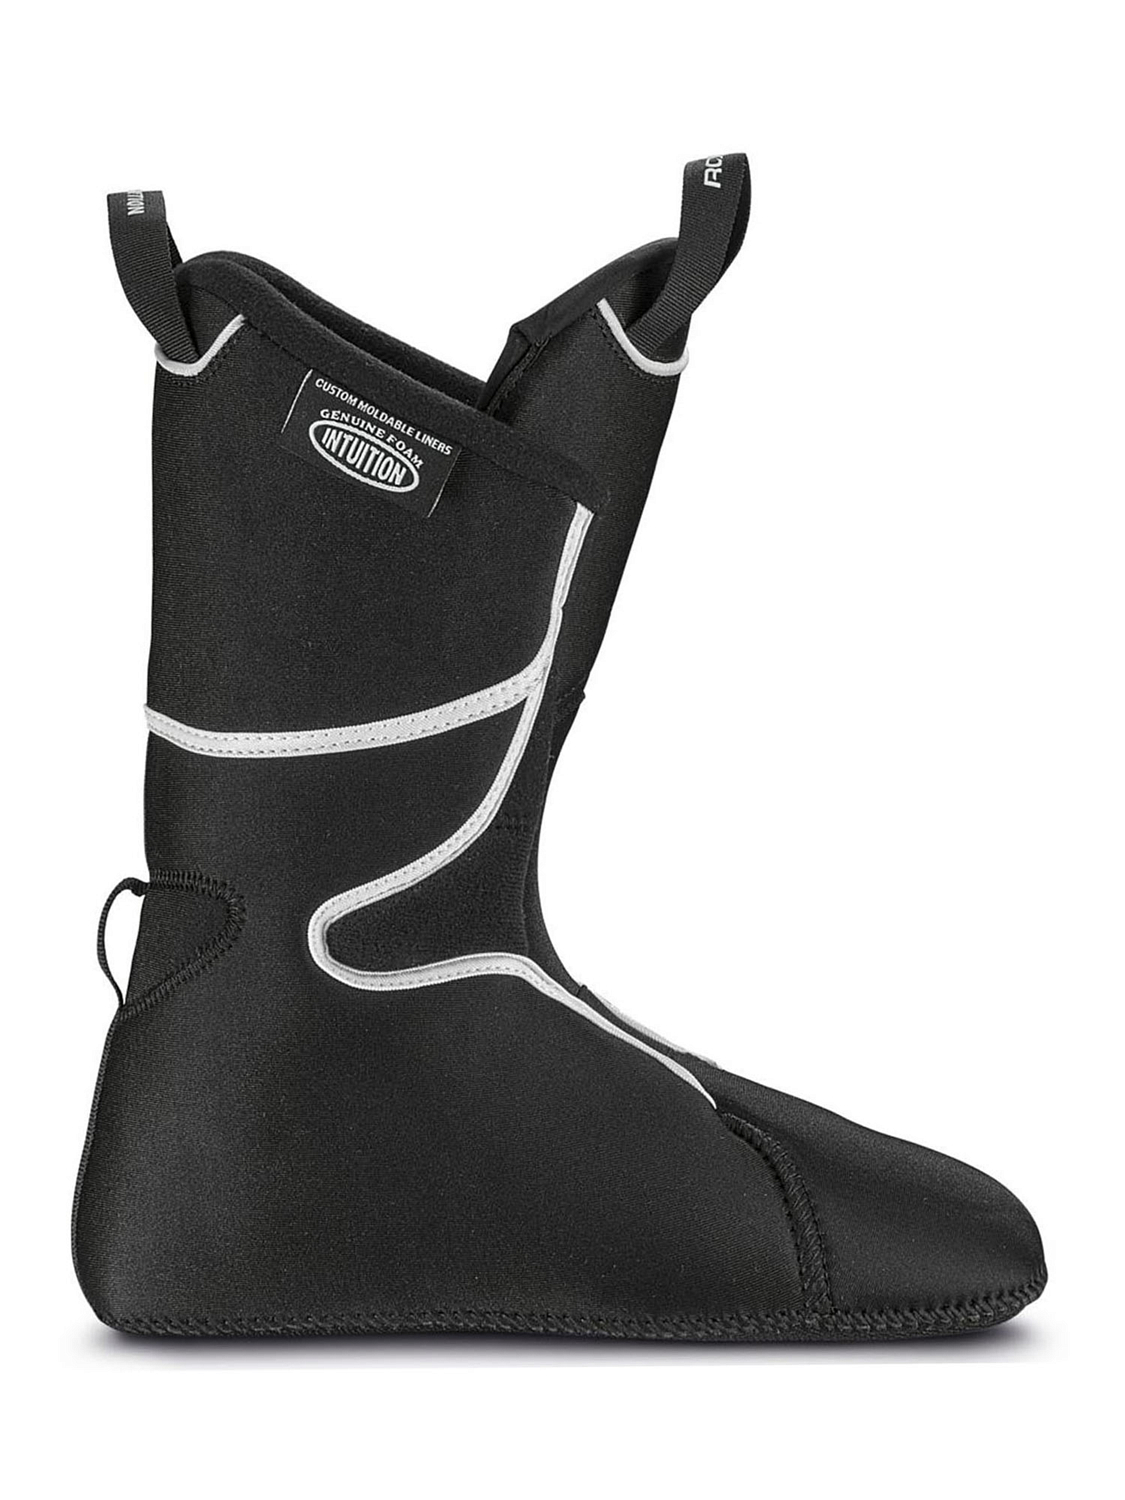 Горнолыжные ботинки ROXA R3 110 I.R Black